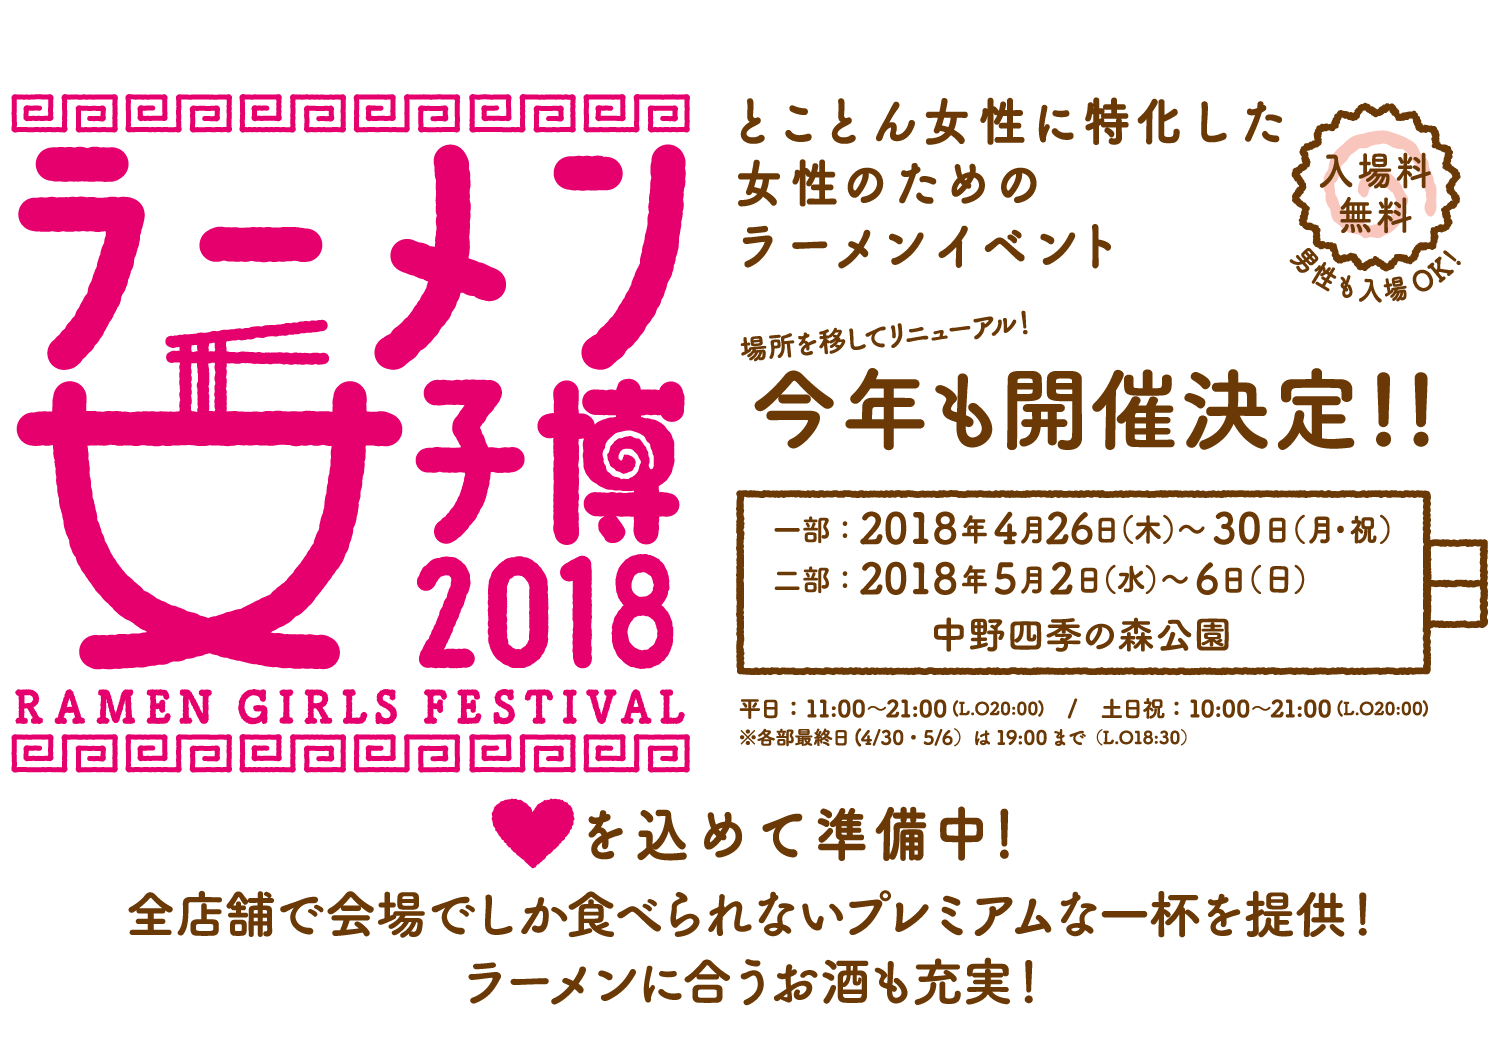 ラーメン女子博 2018 -Ramen girls Festival-